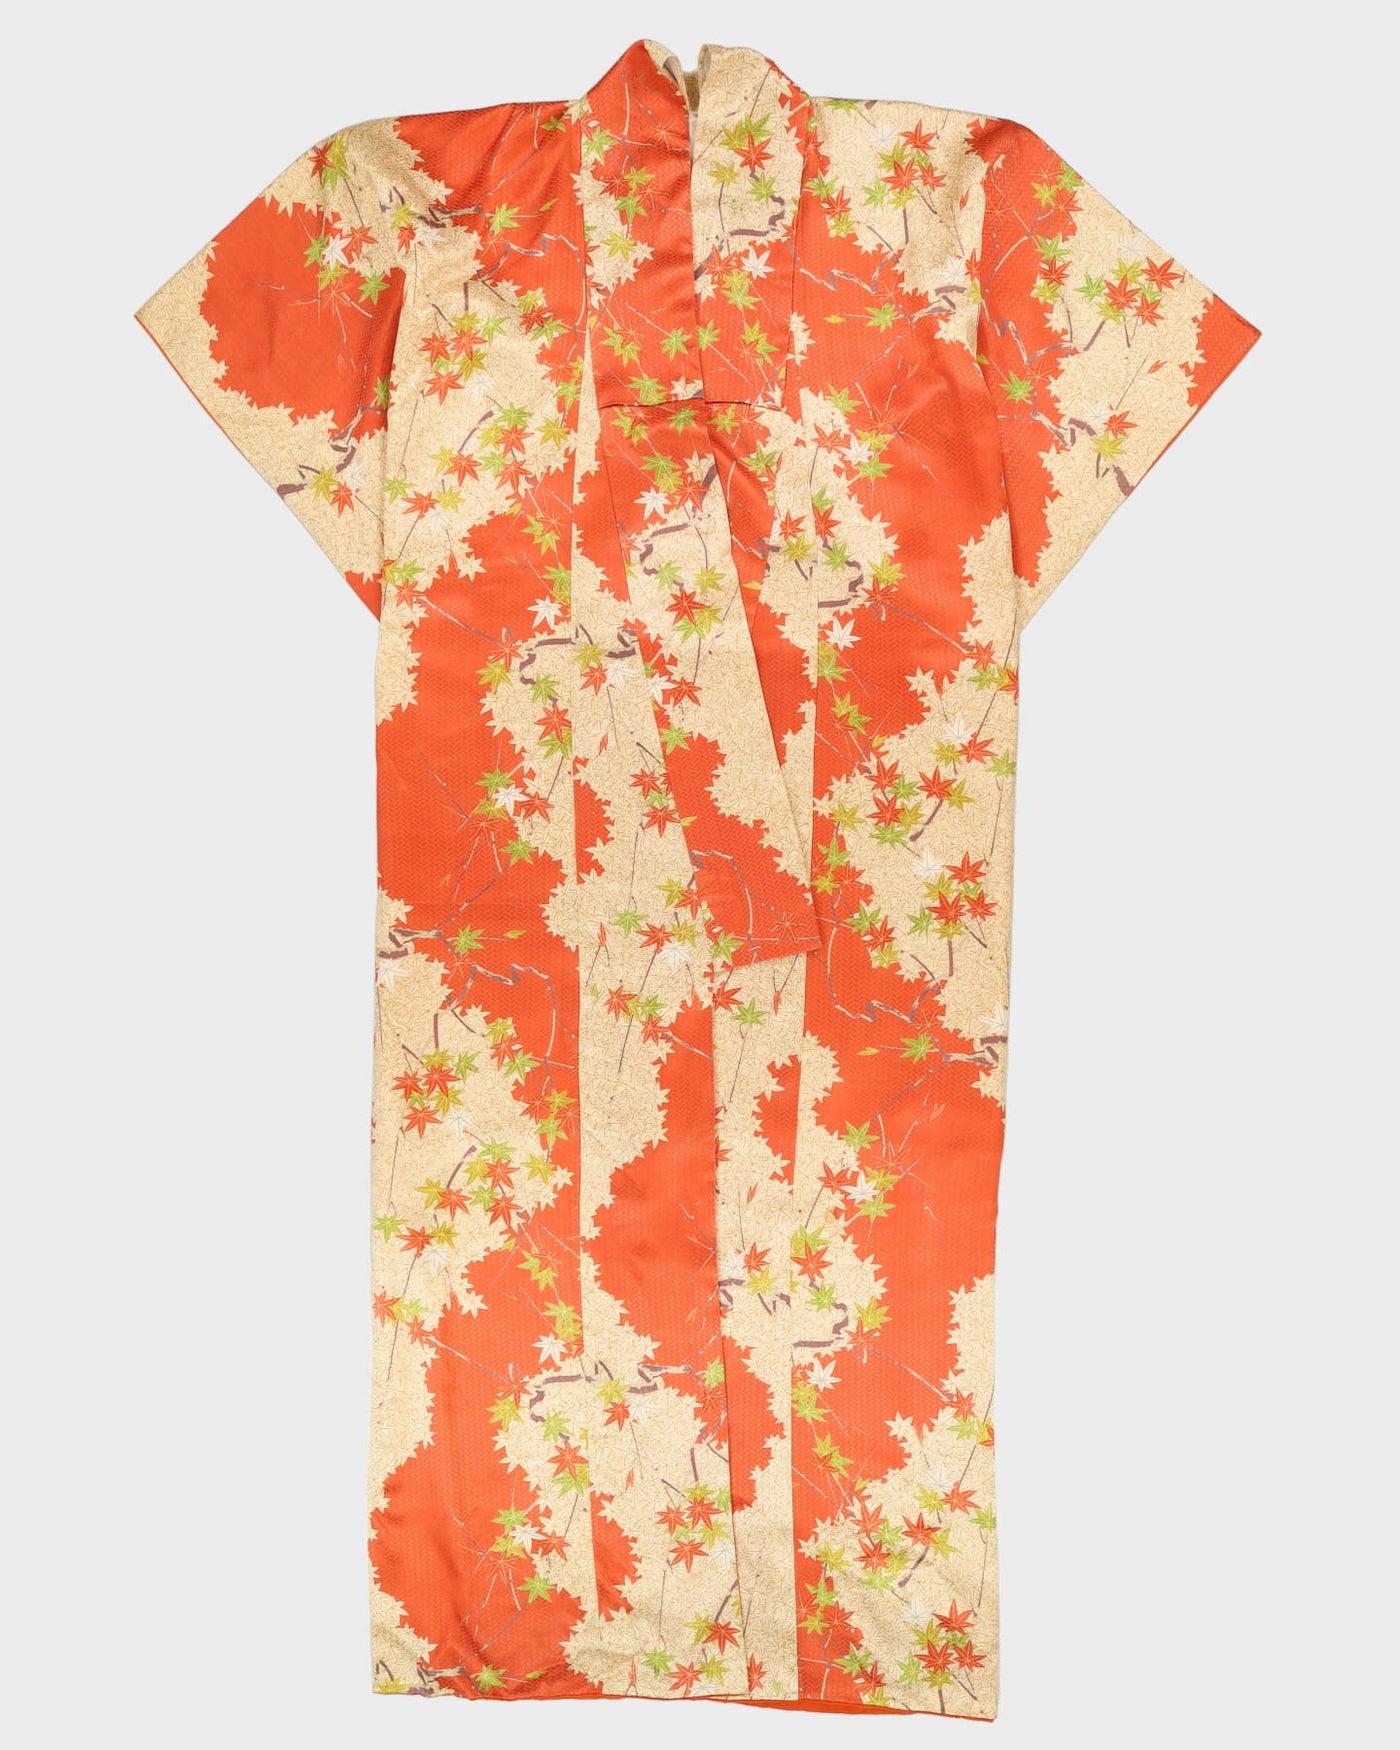 Yellow With Orange Flowers Kimono - XL